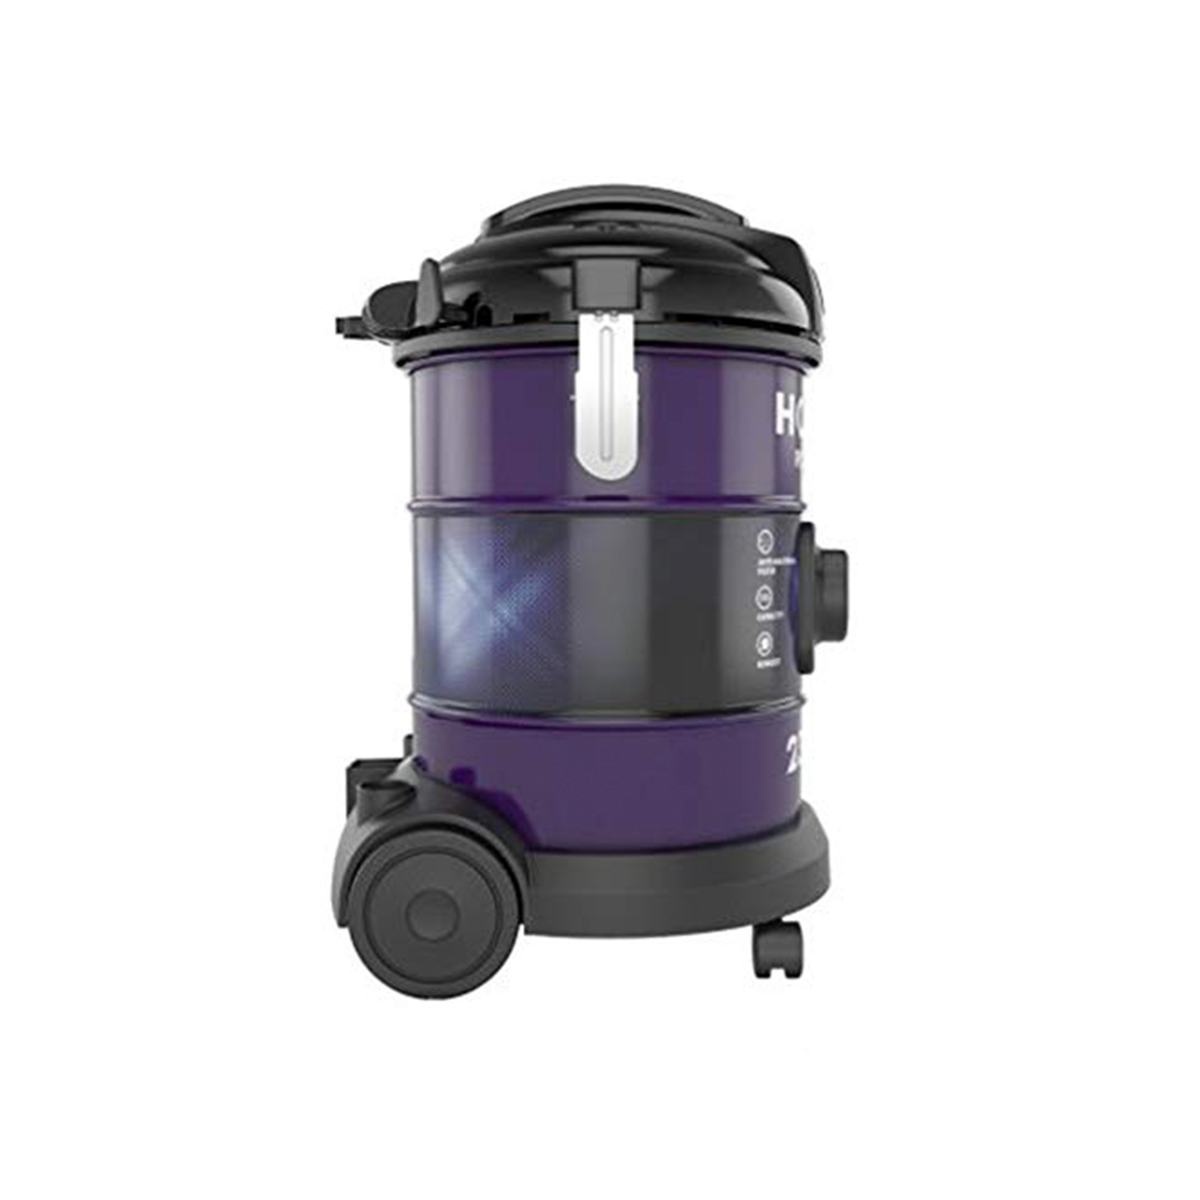 Hoover Drum Vacuum Cleaner HT85T3 2300W